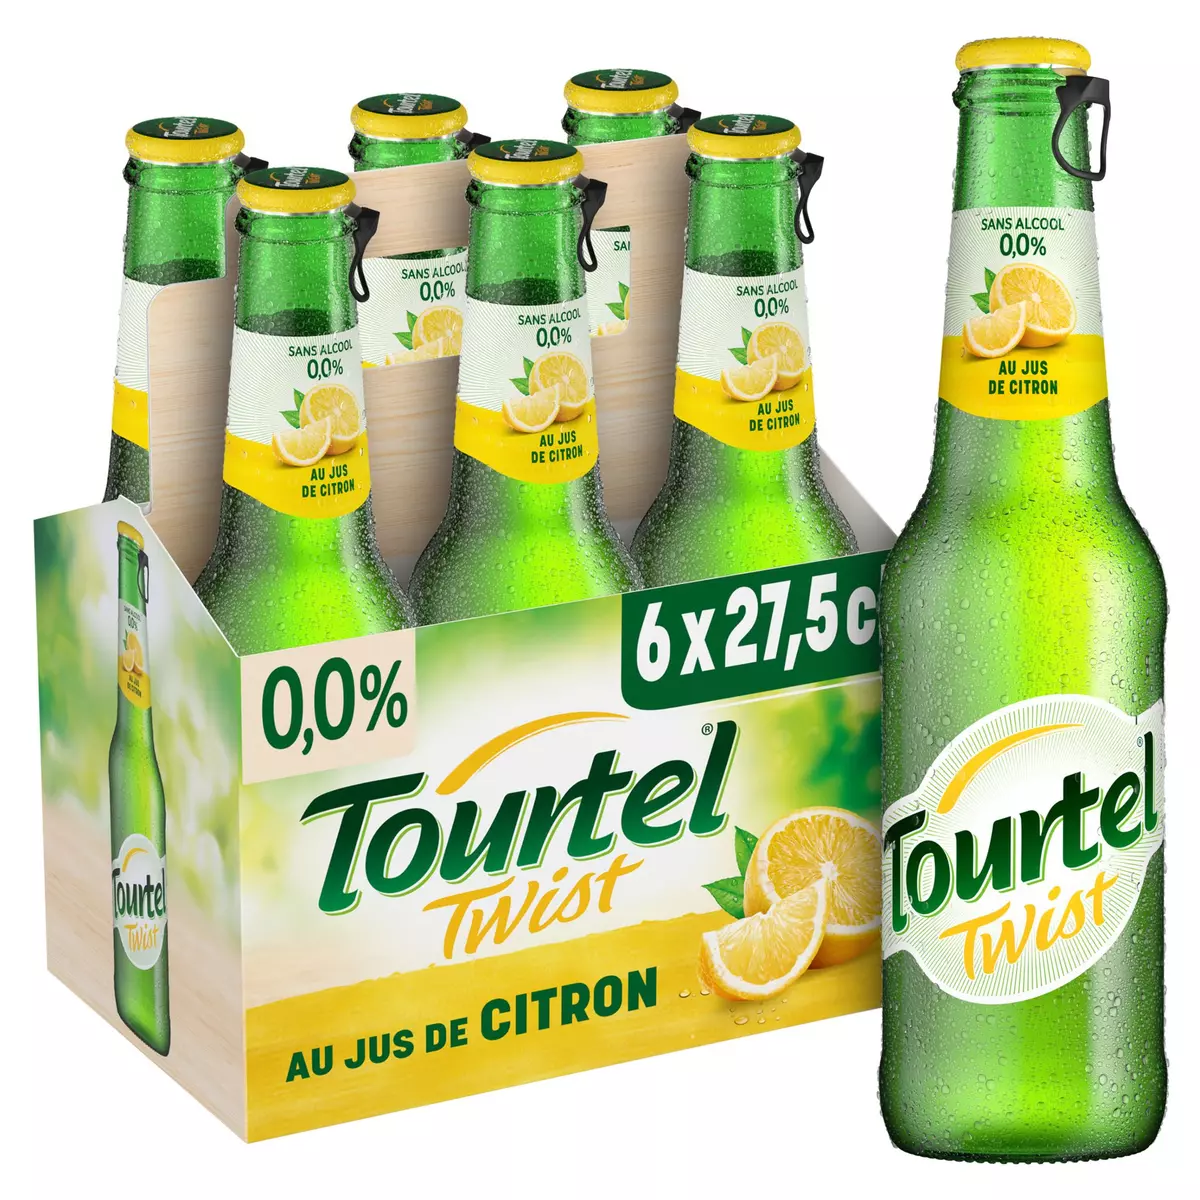 TOURTEL TWIST Bière sans alcool 0.0% aromatisée au jus de citron 6x27.5cl